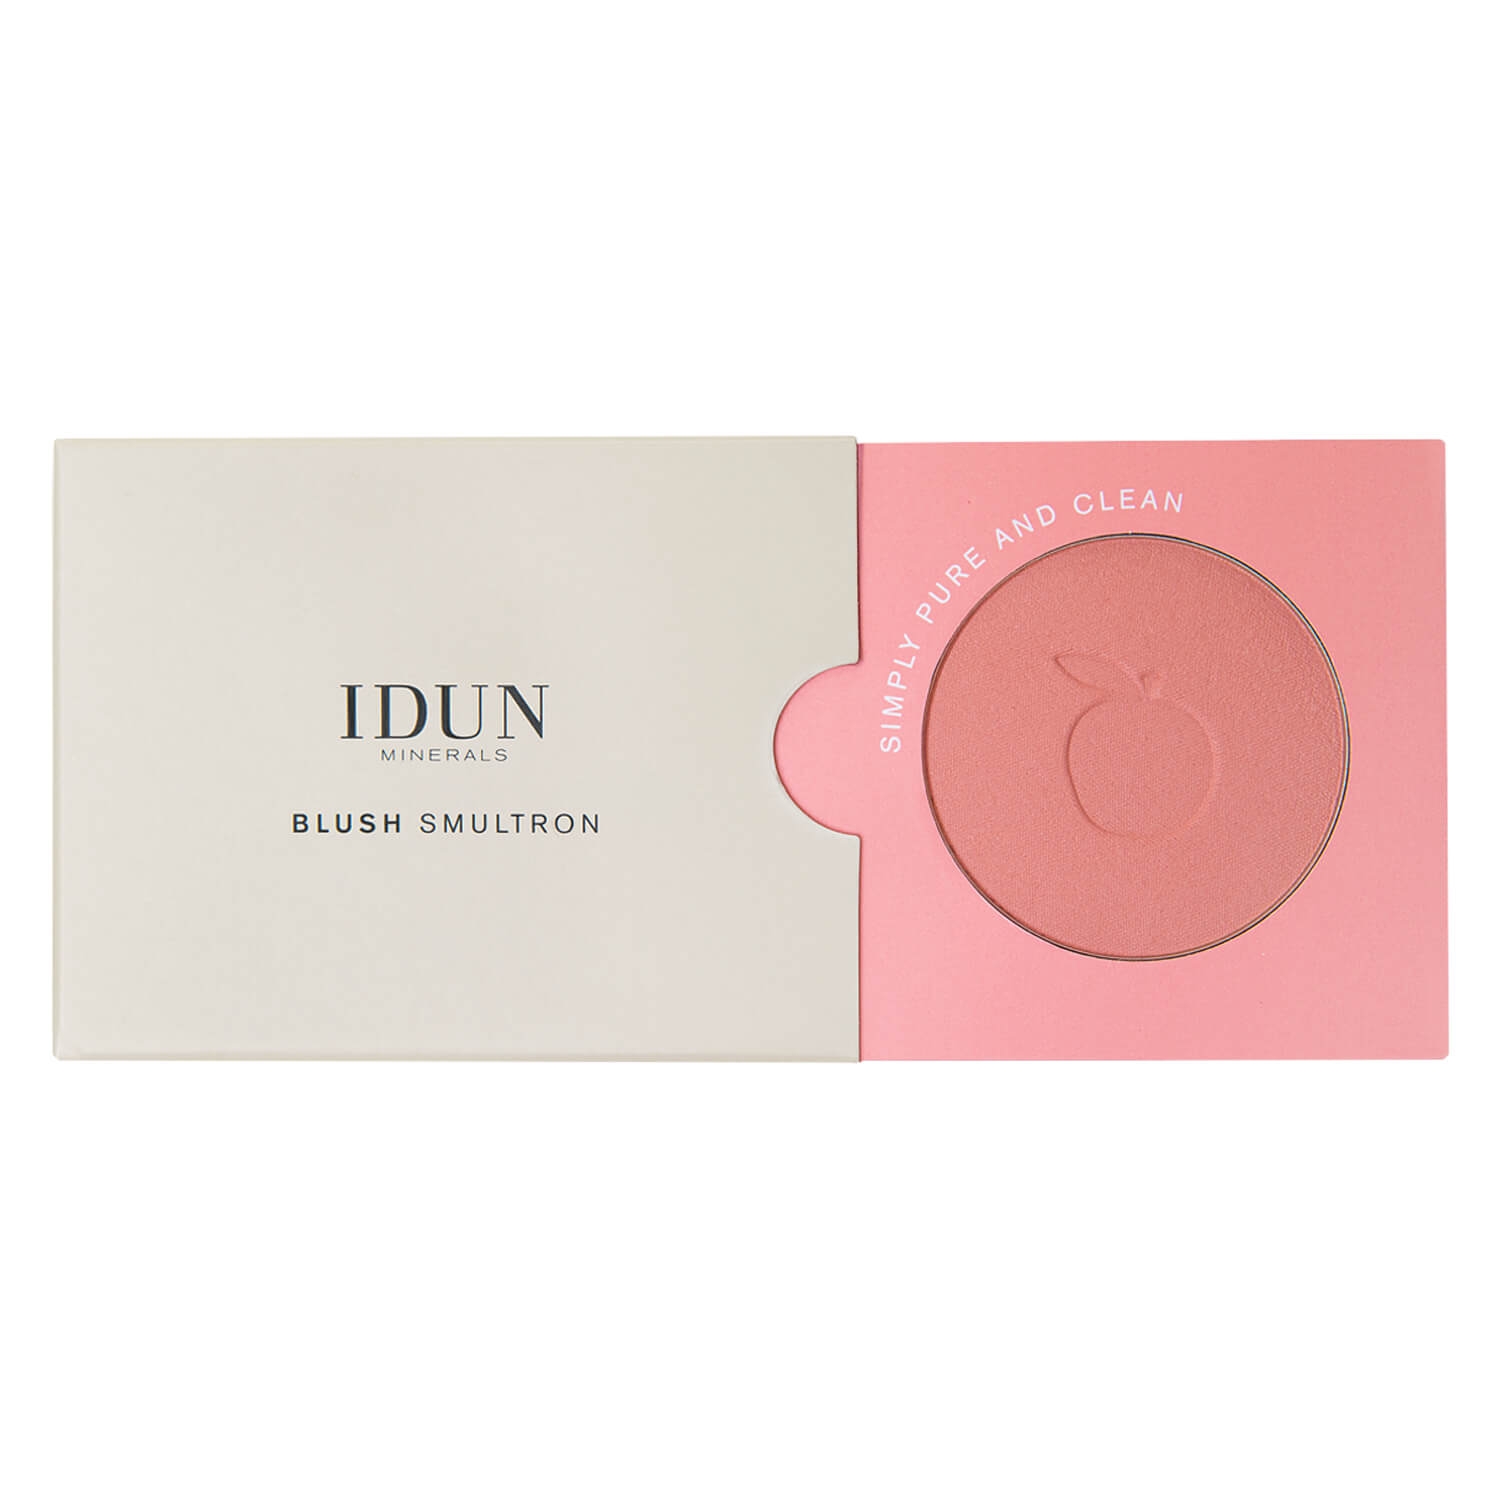 Produktbild von IDUN Teint - Mineral Blush Smultron Peach Pink